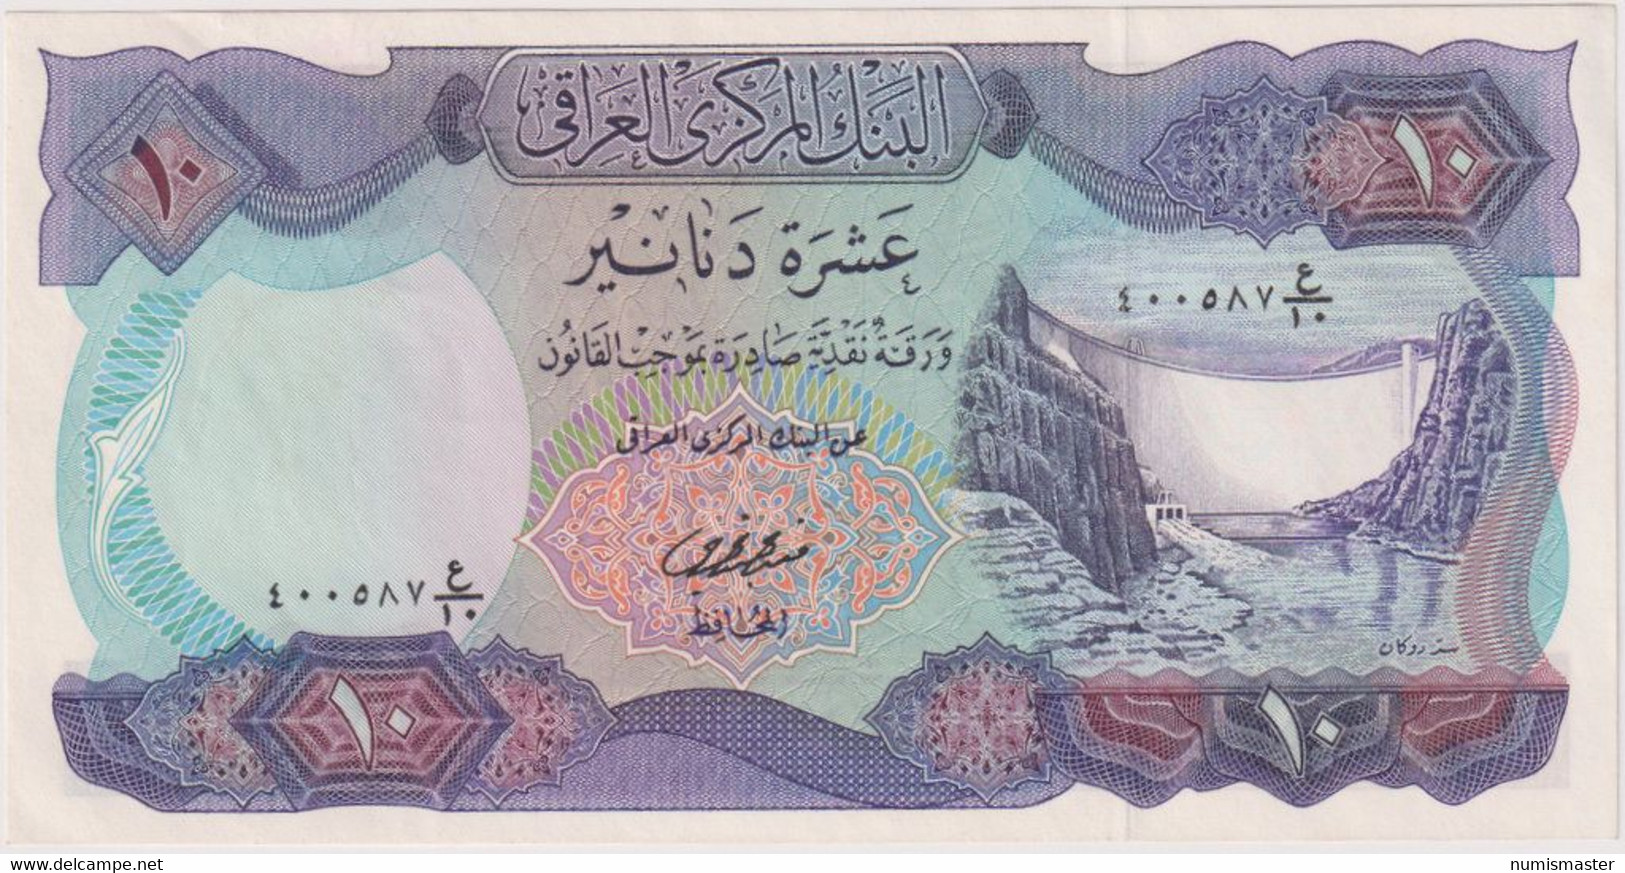 IRAQ , 10 DINARS ND (1973) P-65 , UNC - Iraq